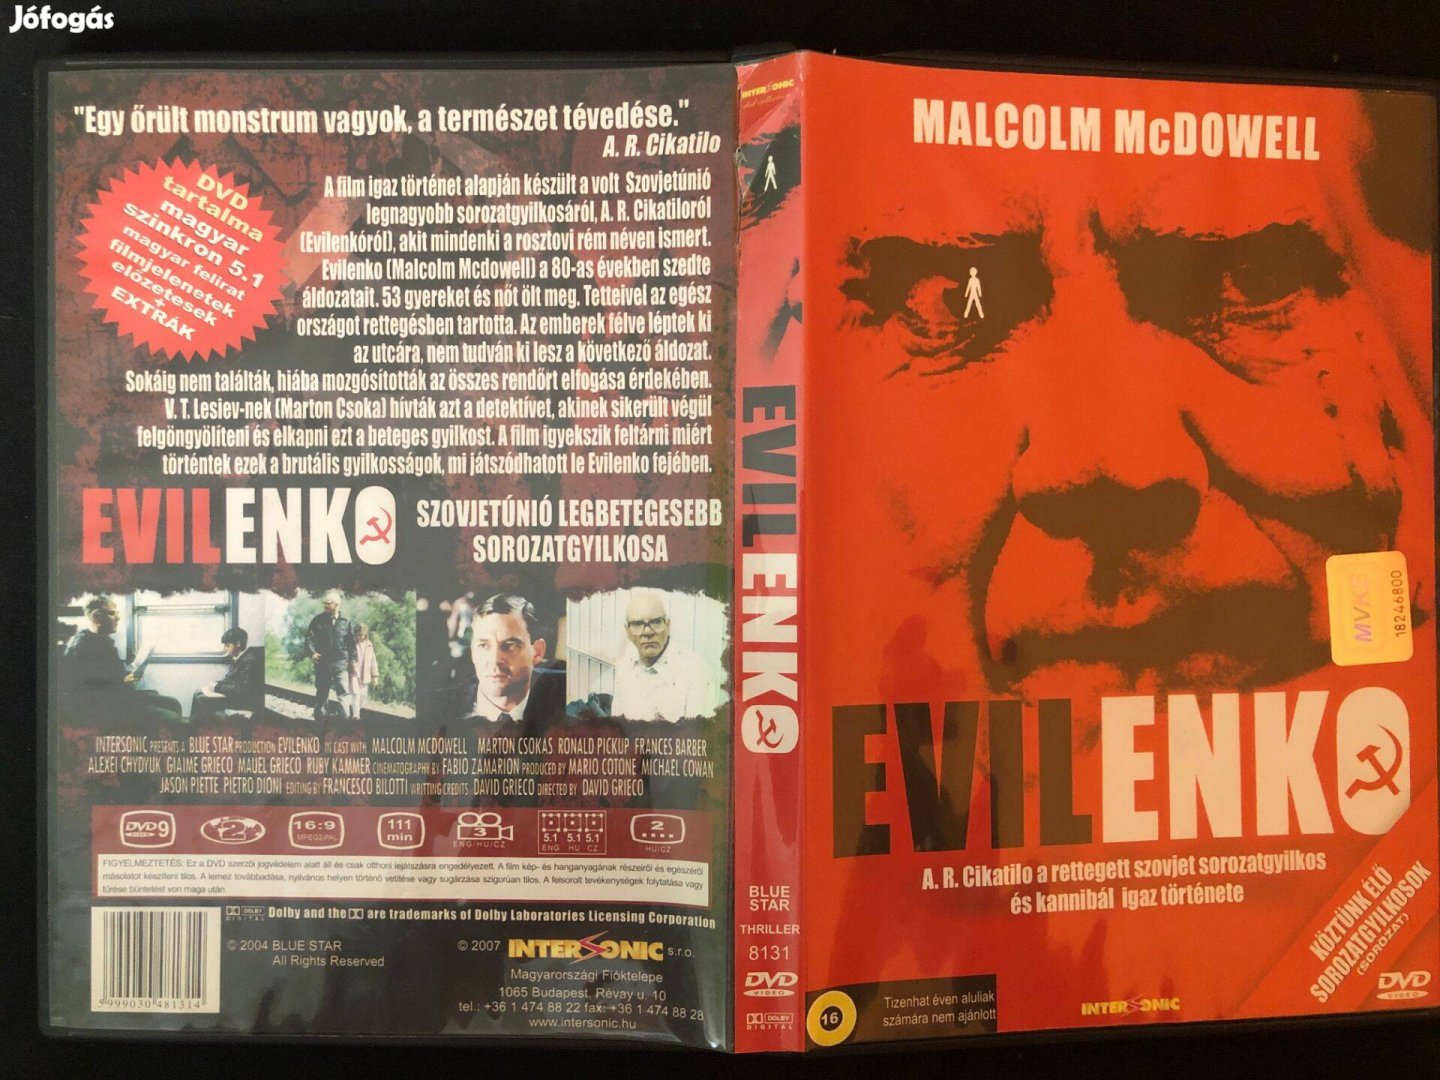 Evilenko (karcmentes, beszerezhetetlen, Malcolm Mcdowell) DVD